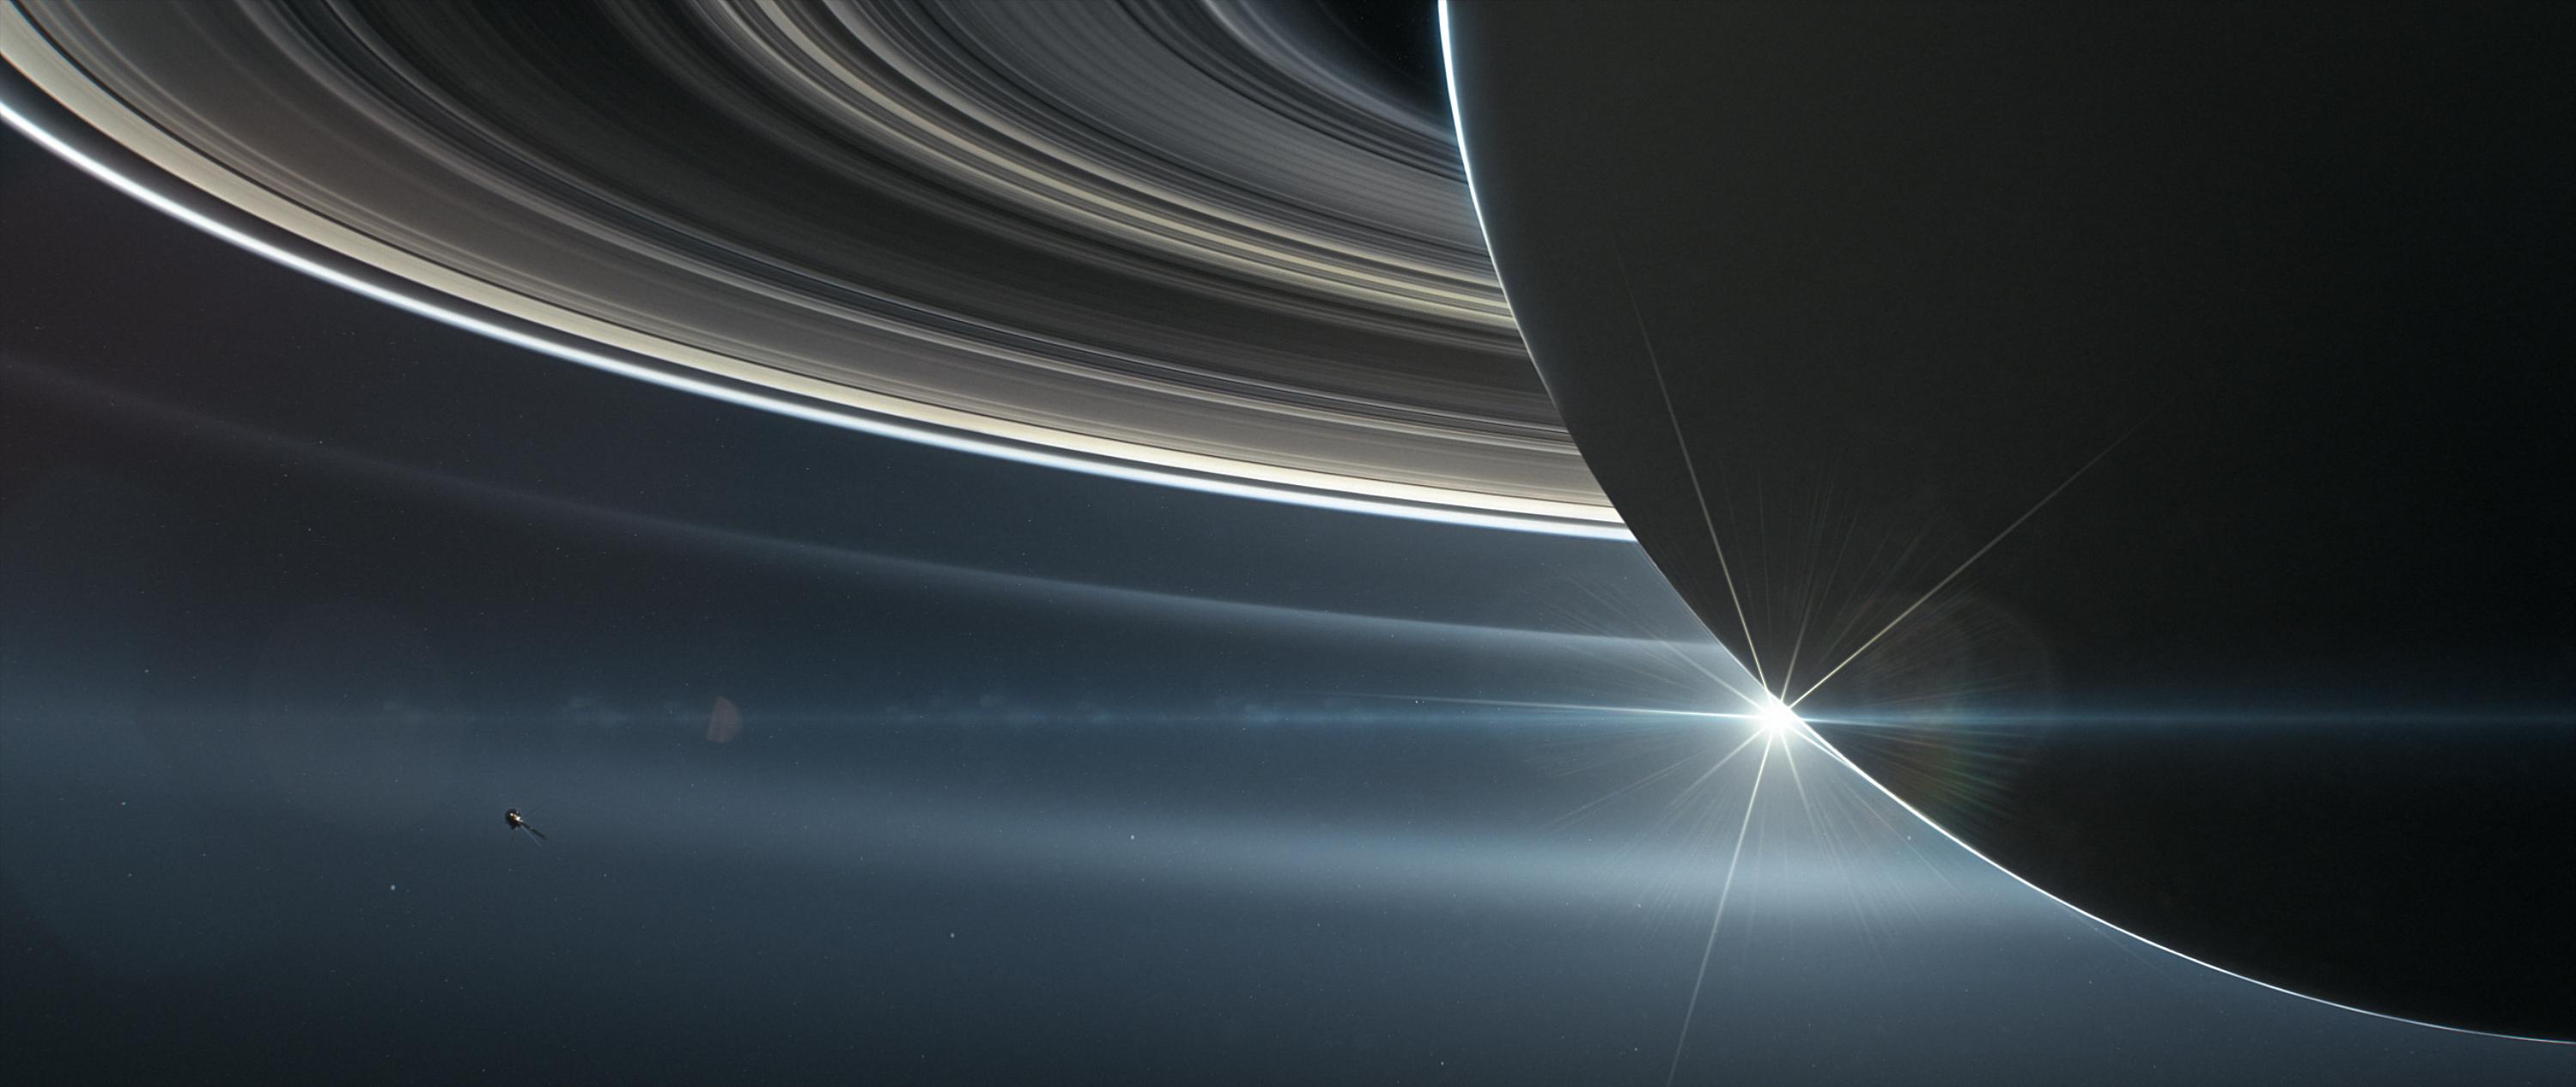 PIA22766: Cassini orbiting Saturn (Illustration)